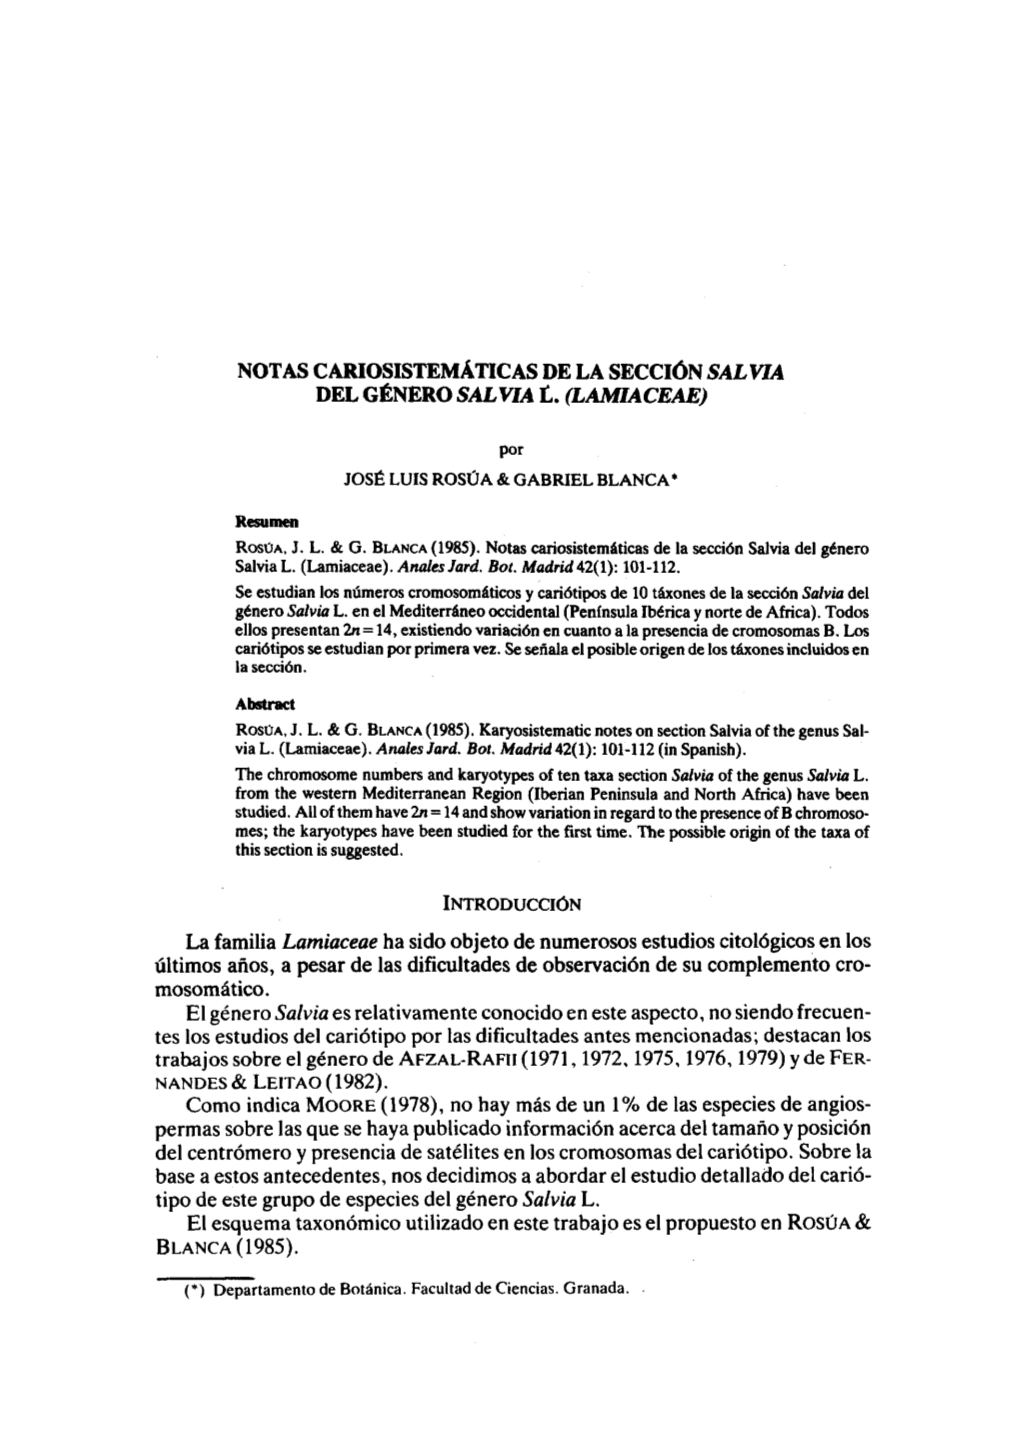 Notas Cariosistemáticas De La Sección "Salvia" Del Género